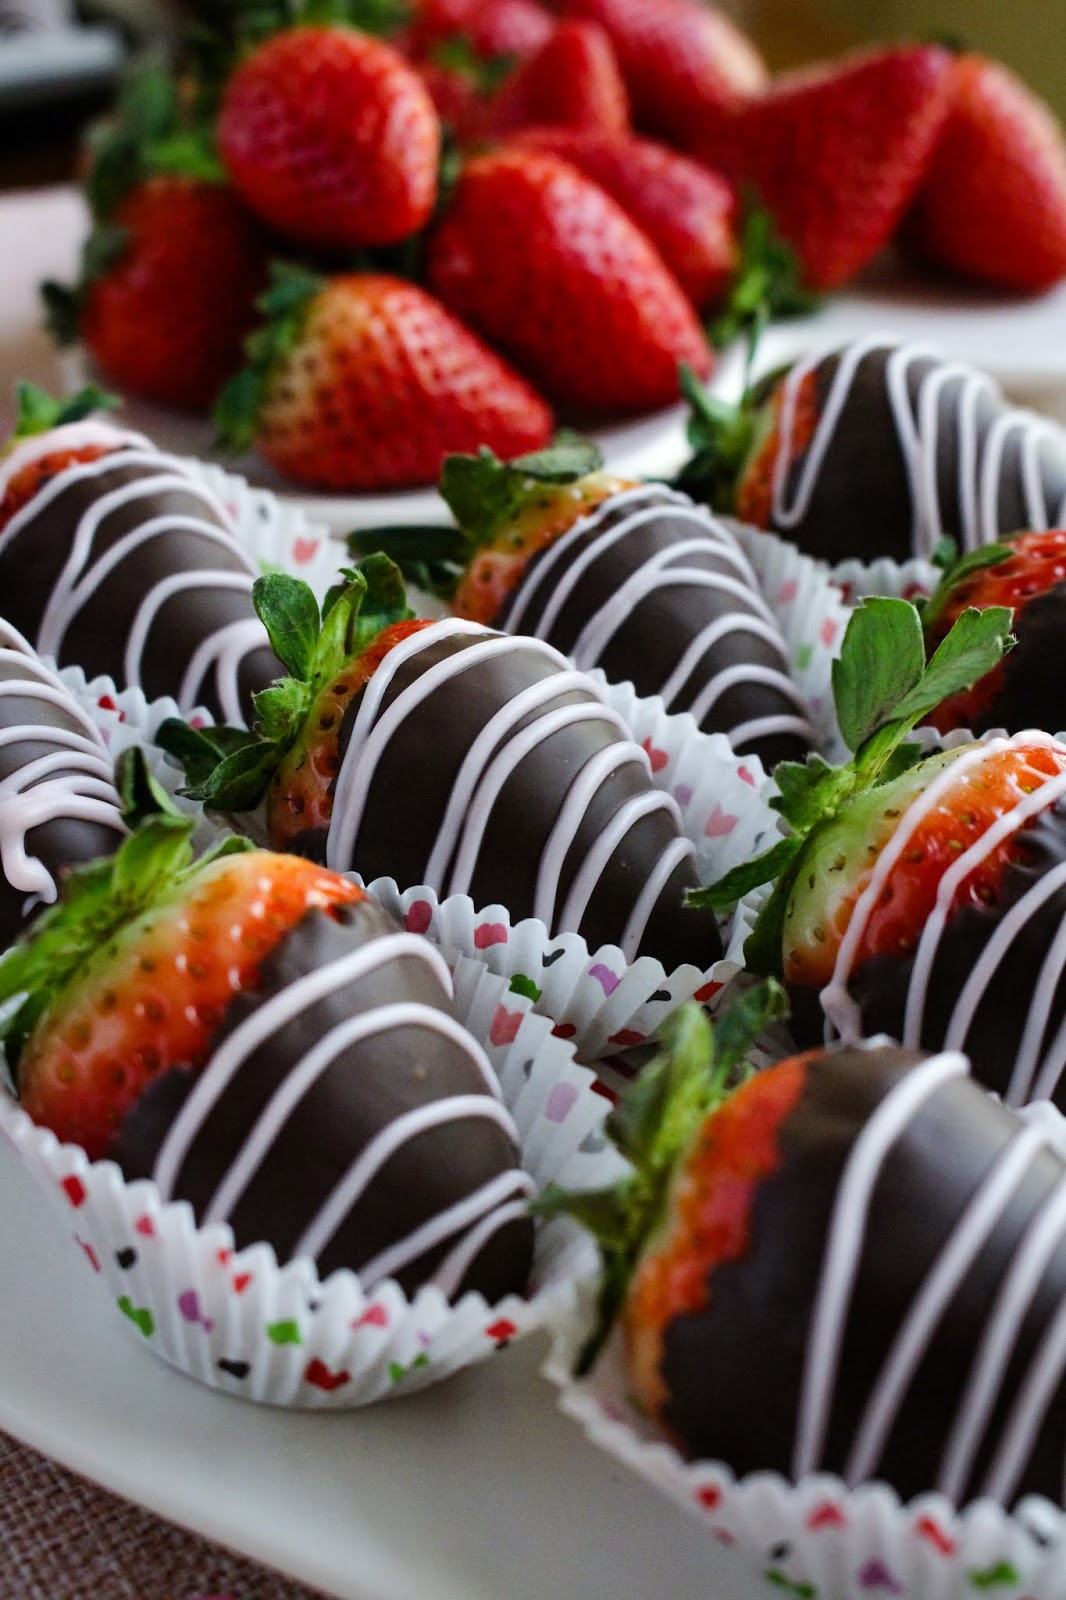 Valentine's Day Chocolate Covered Strawberries | The Two Bite Club | #valentinesdaydessert #strawberries #chocolate